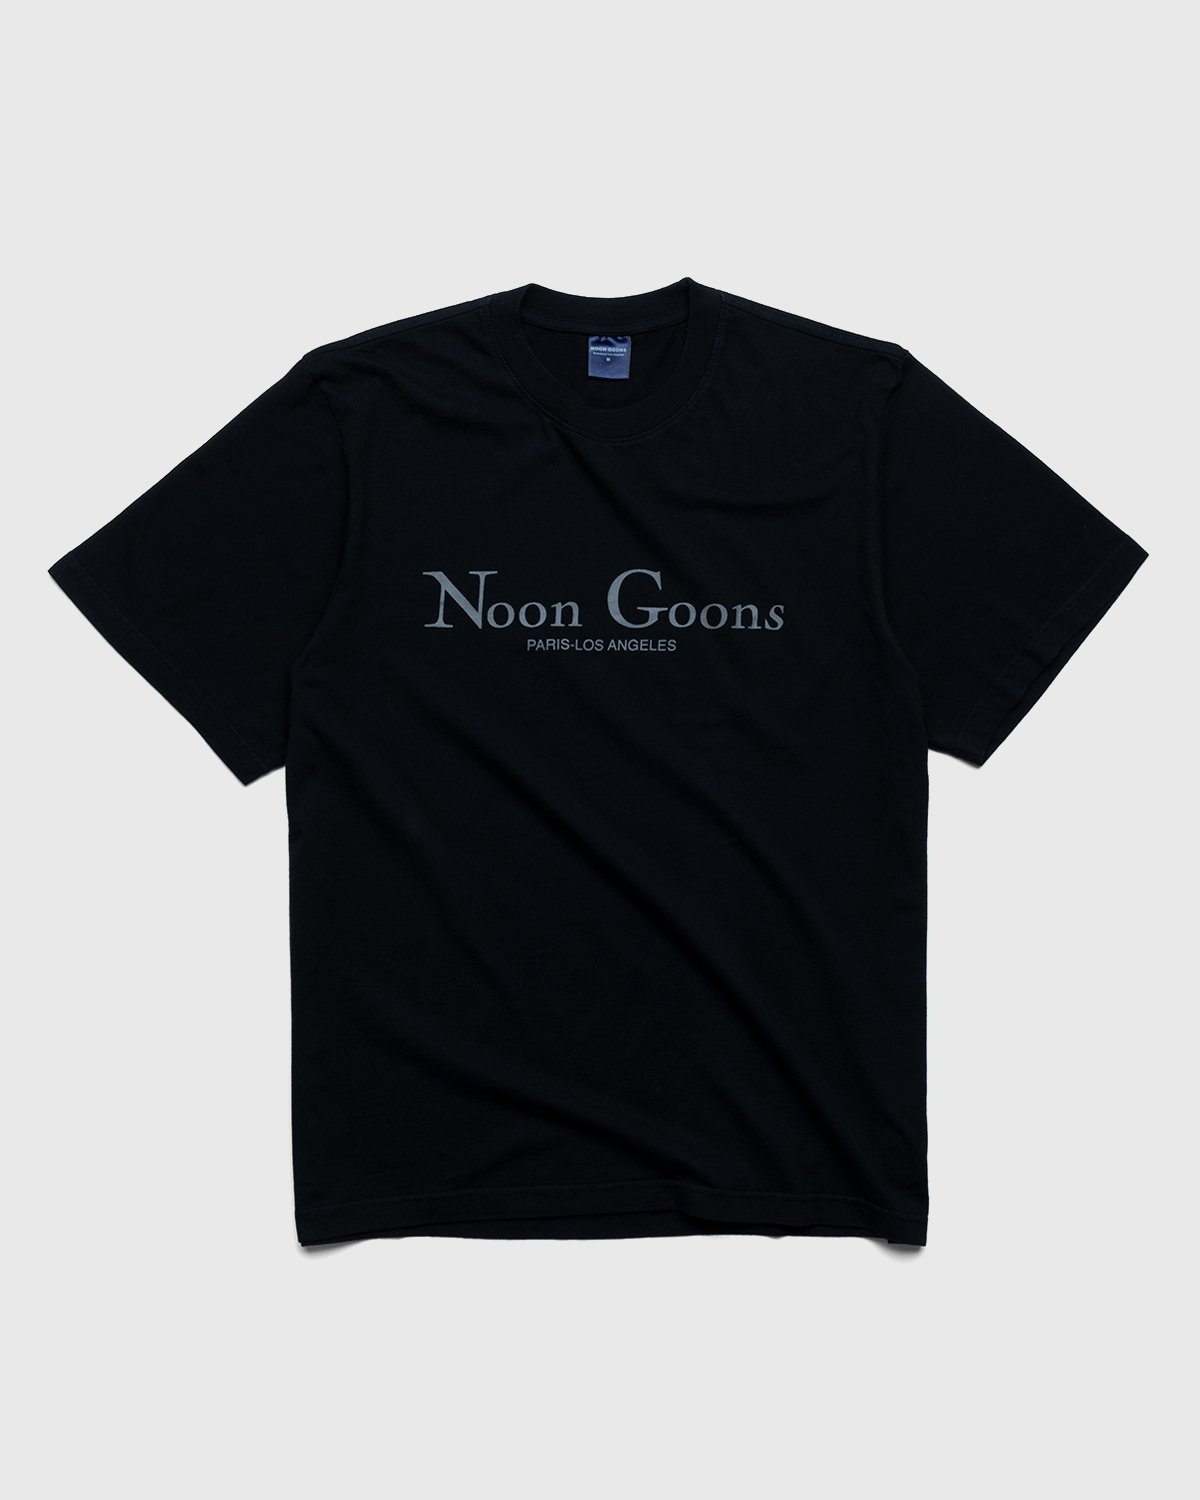 Noon Goons – Sister City T-Shirt Black - T-Shirts - Black - Image 1